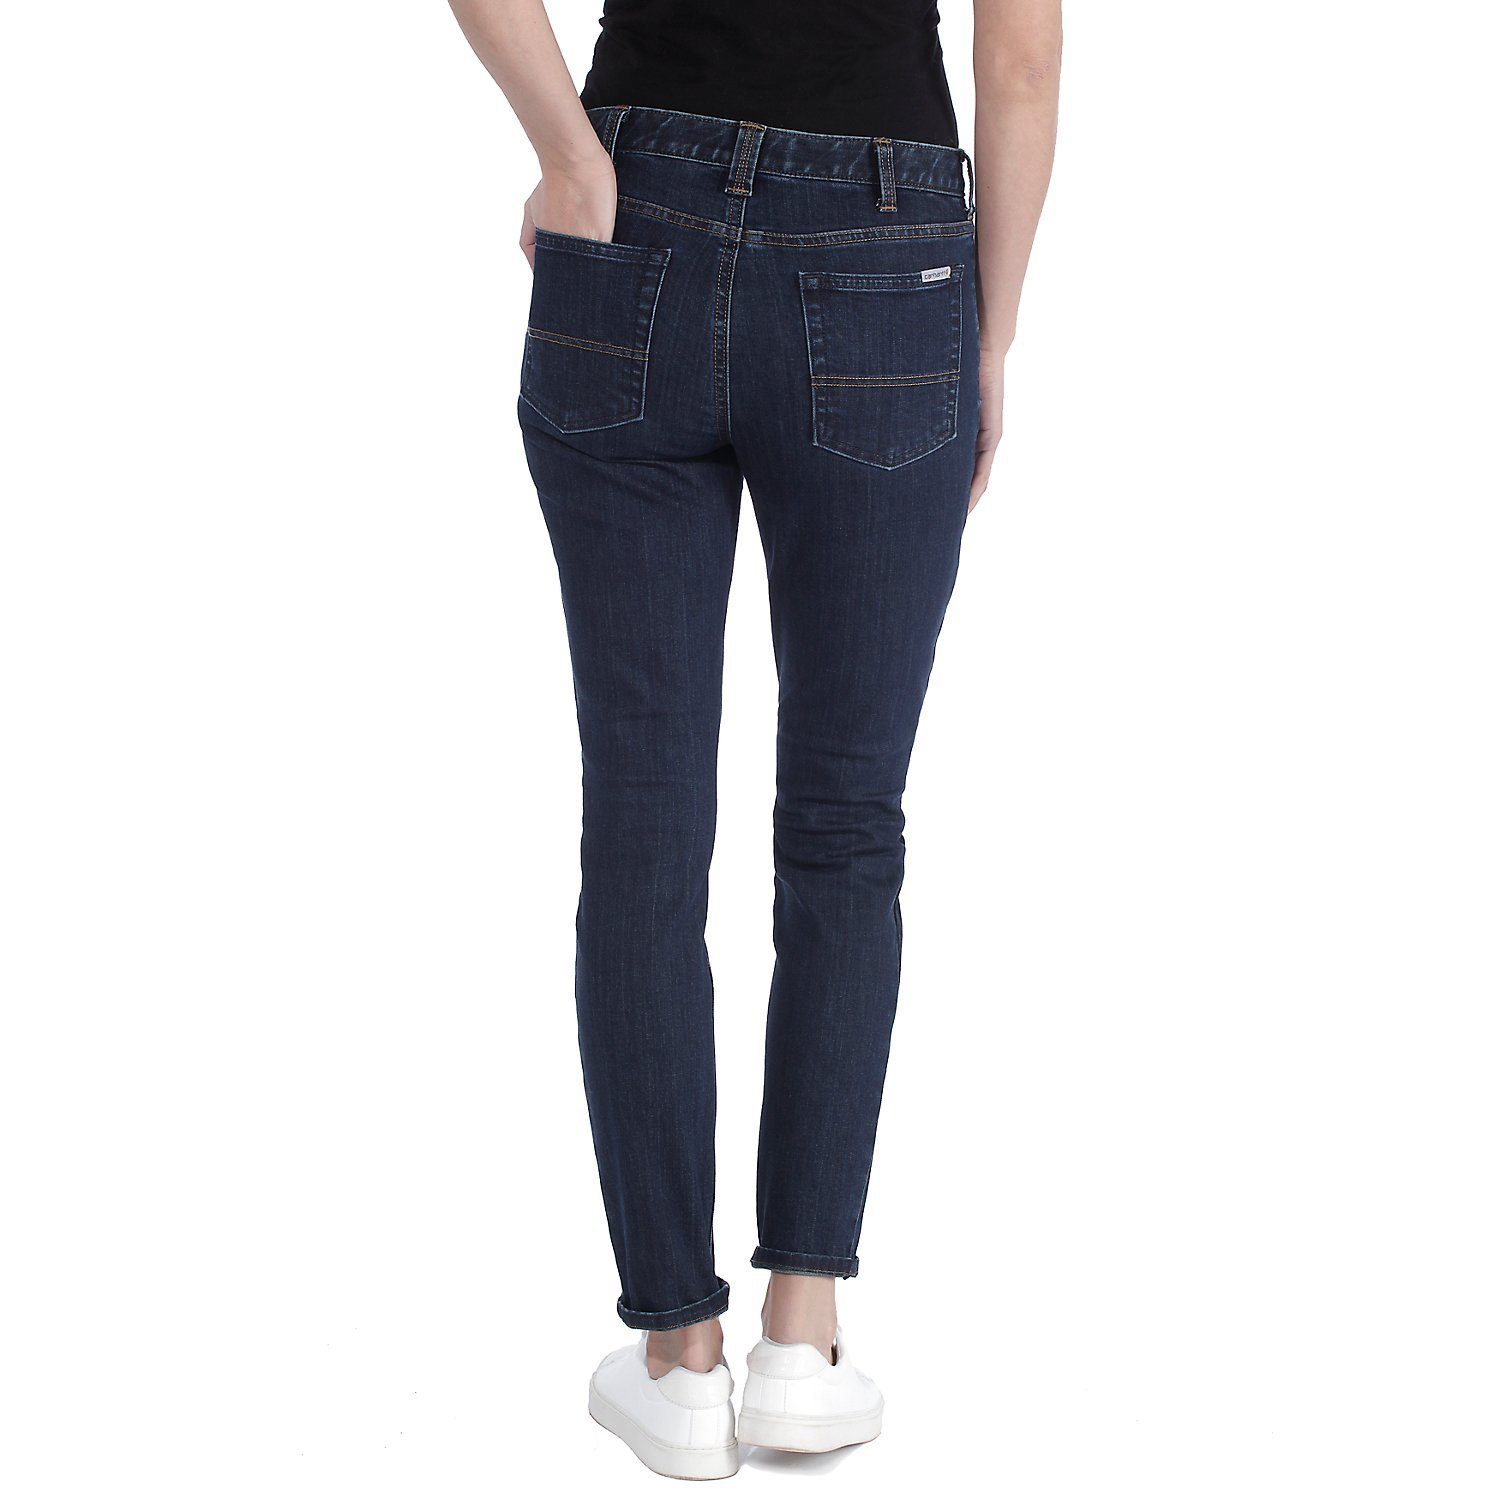 Damen, Carhartt Jeans Fit, Midnight Fit Skinny-fit-Jeans für Sky Slim Skinny Slim